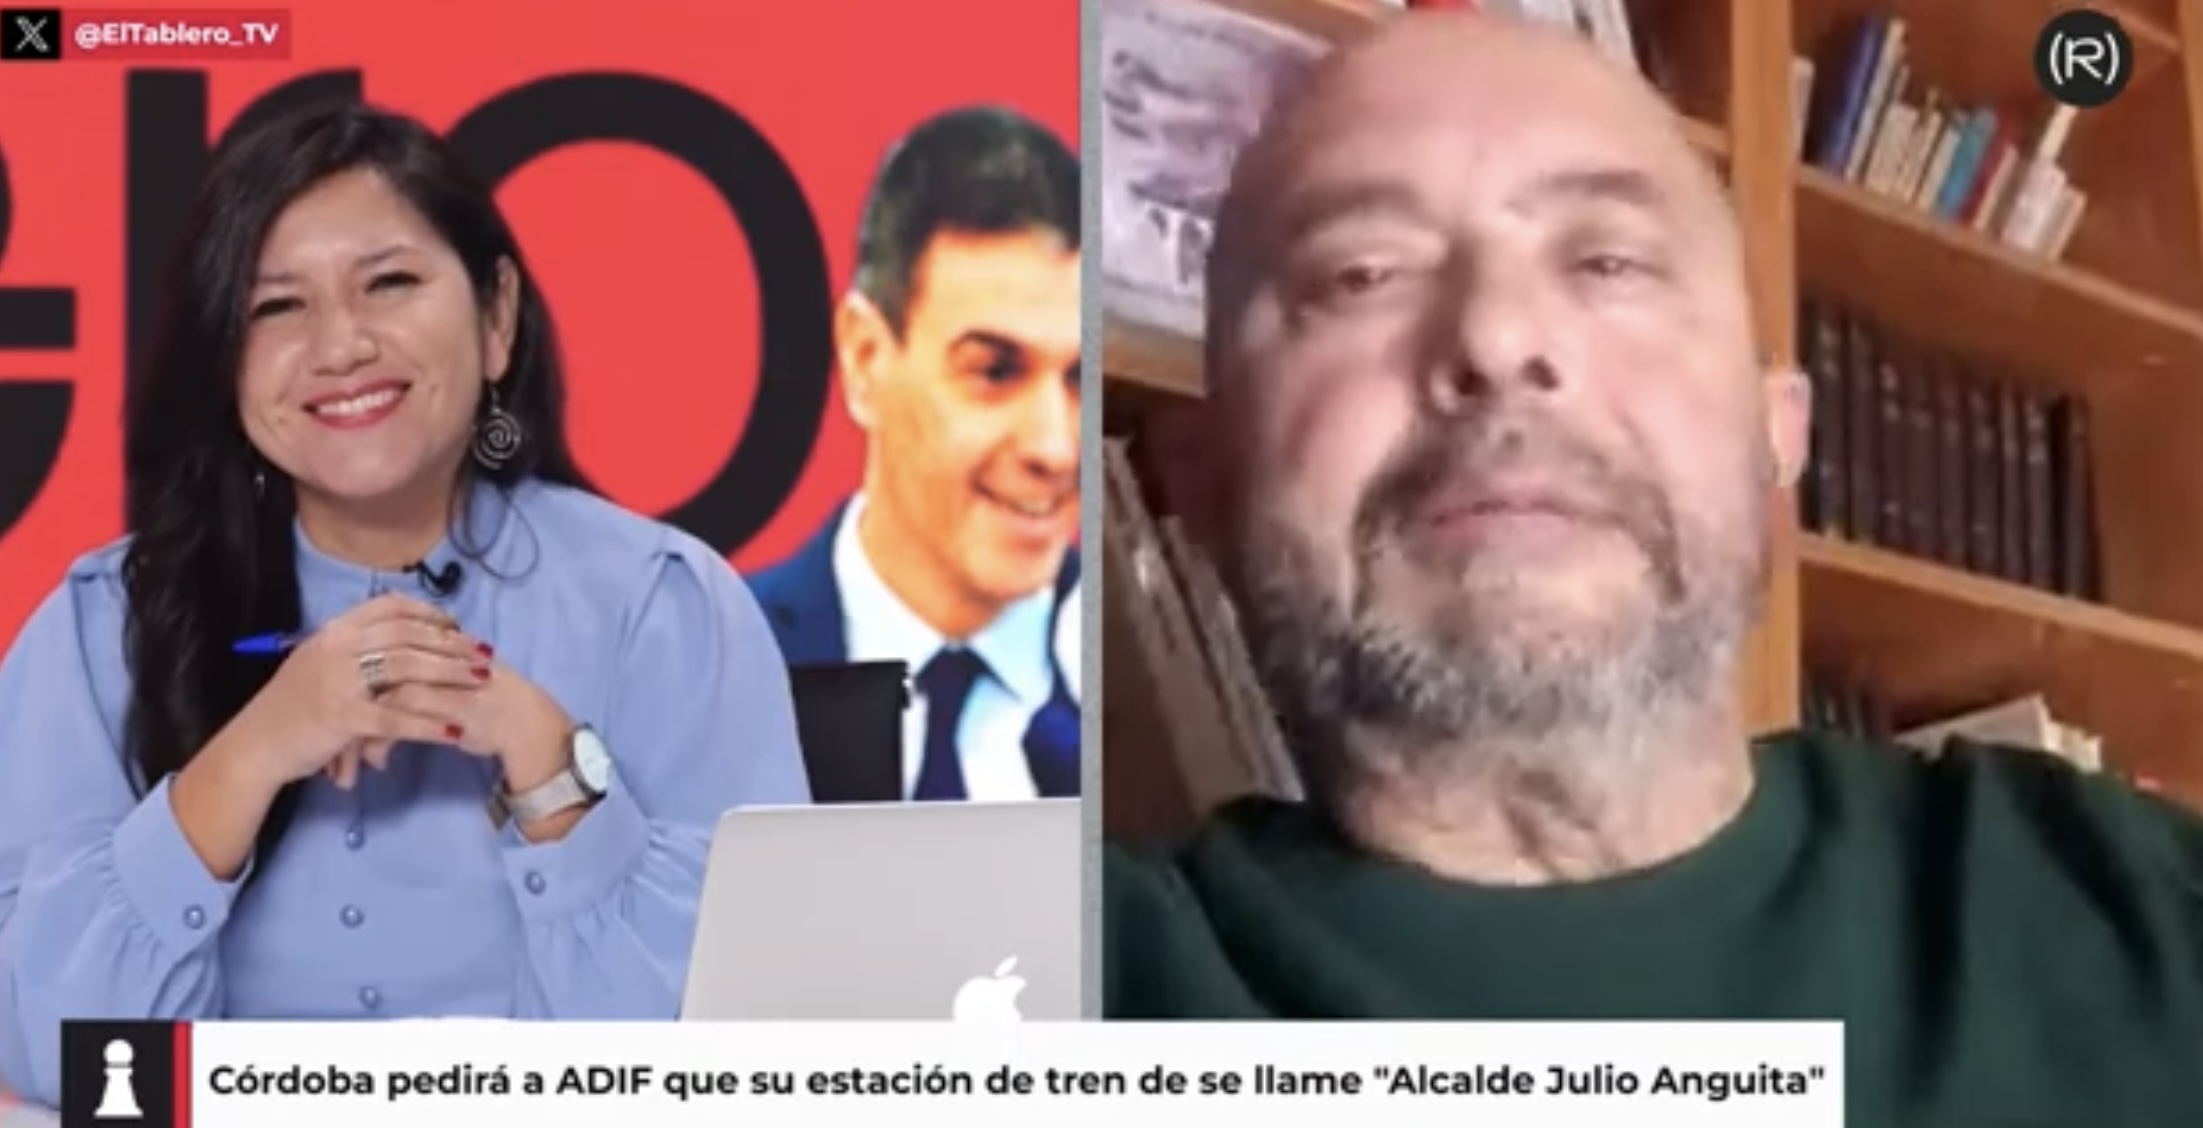 Iniciativa con apoyo mayoritario para llamar ‘Alcalde Julio Anguita’ a la estación de tren de Córdoba